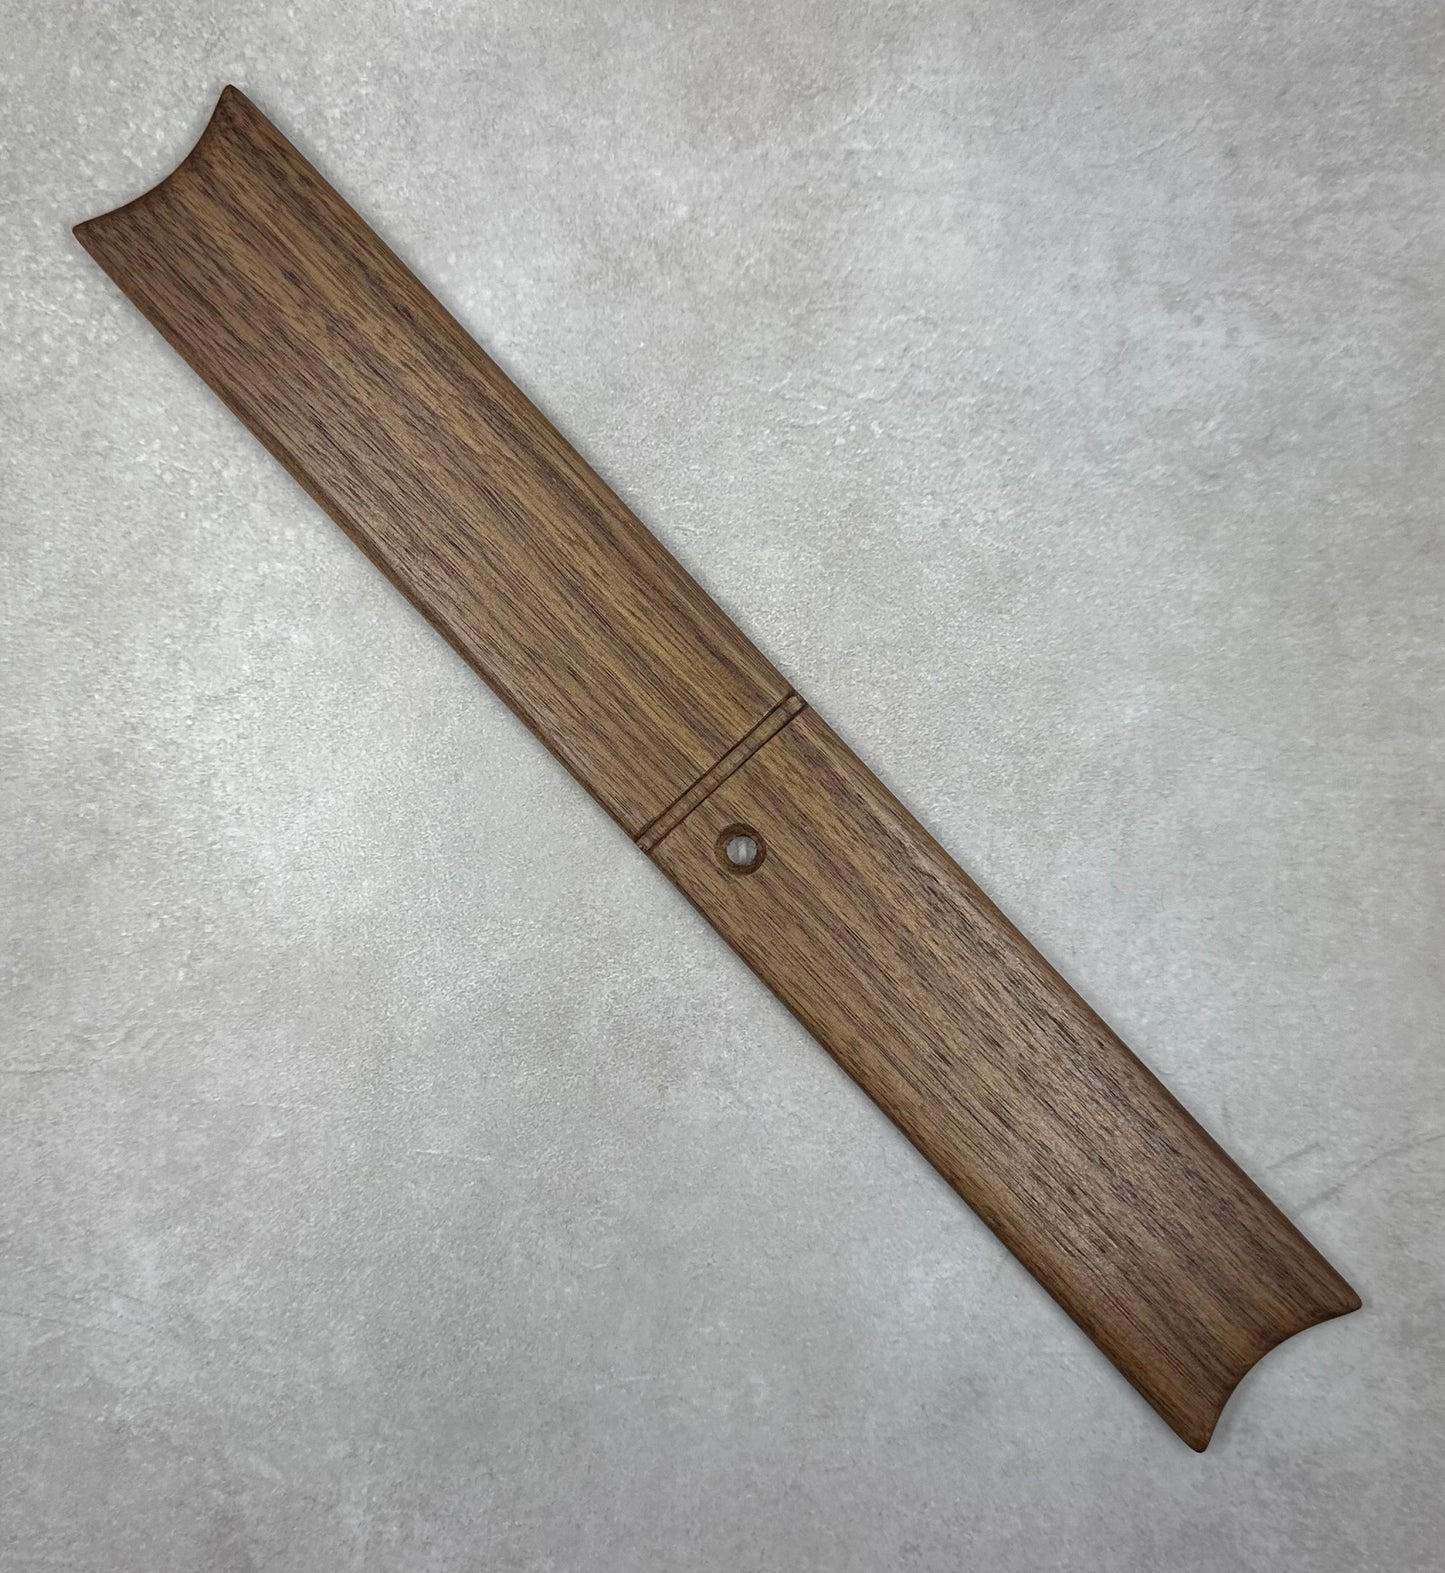 Floss Winder (single hard wood)